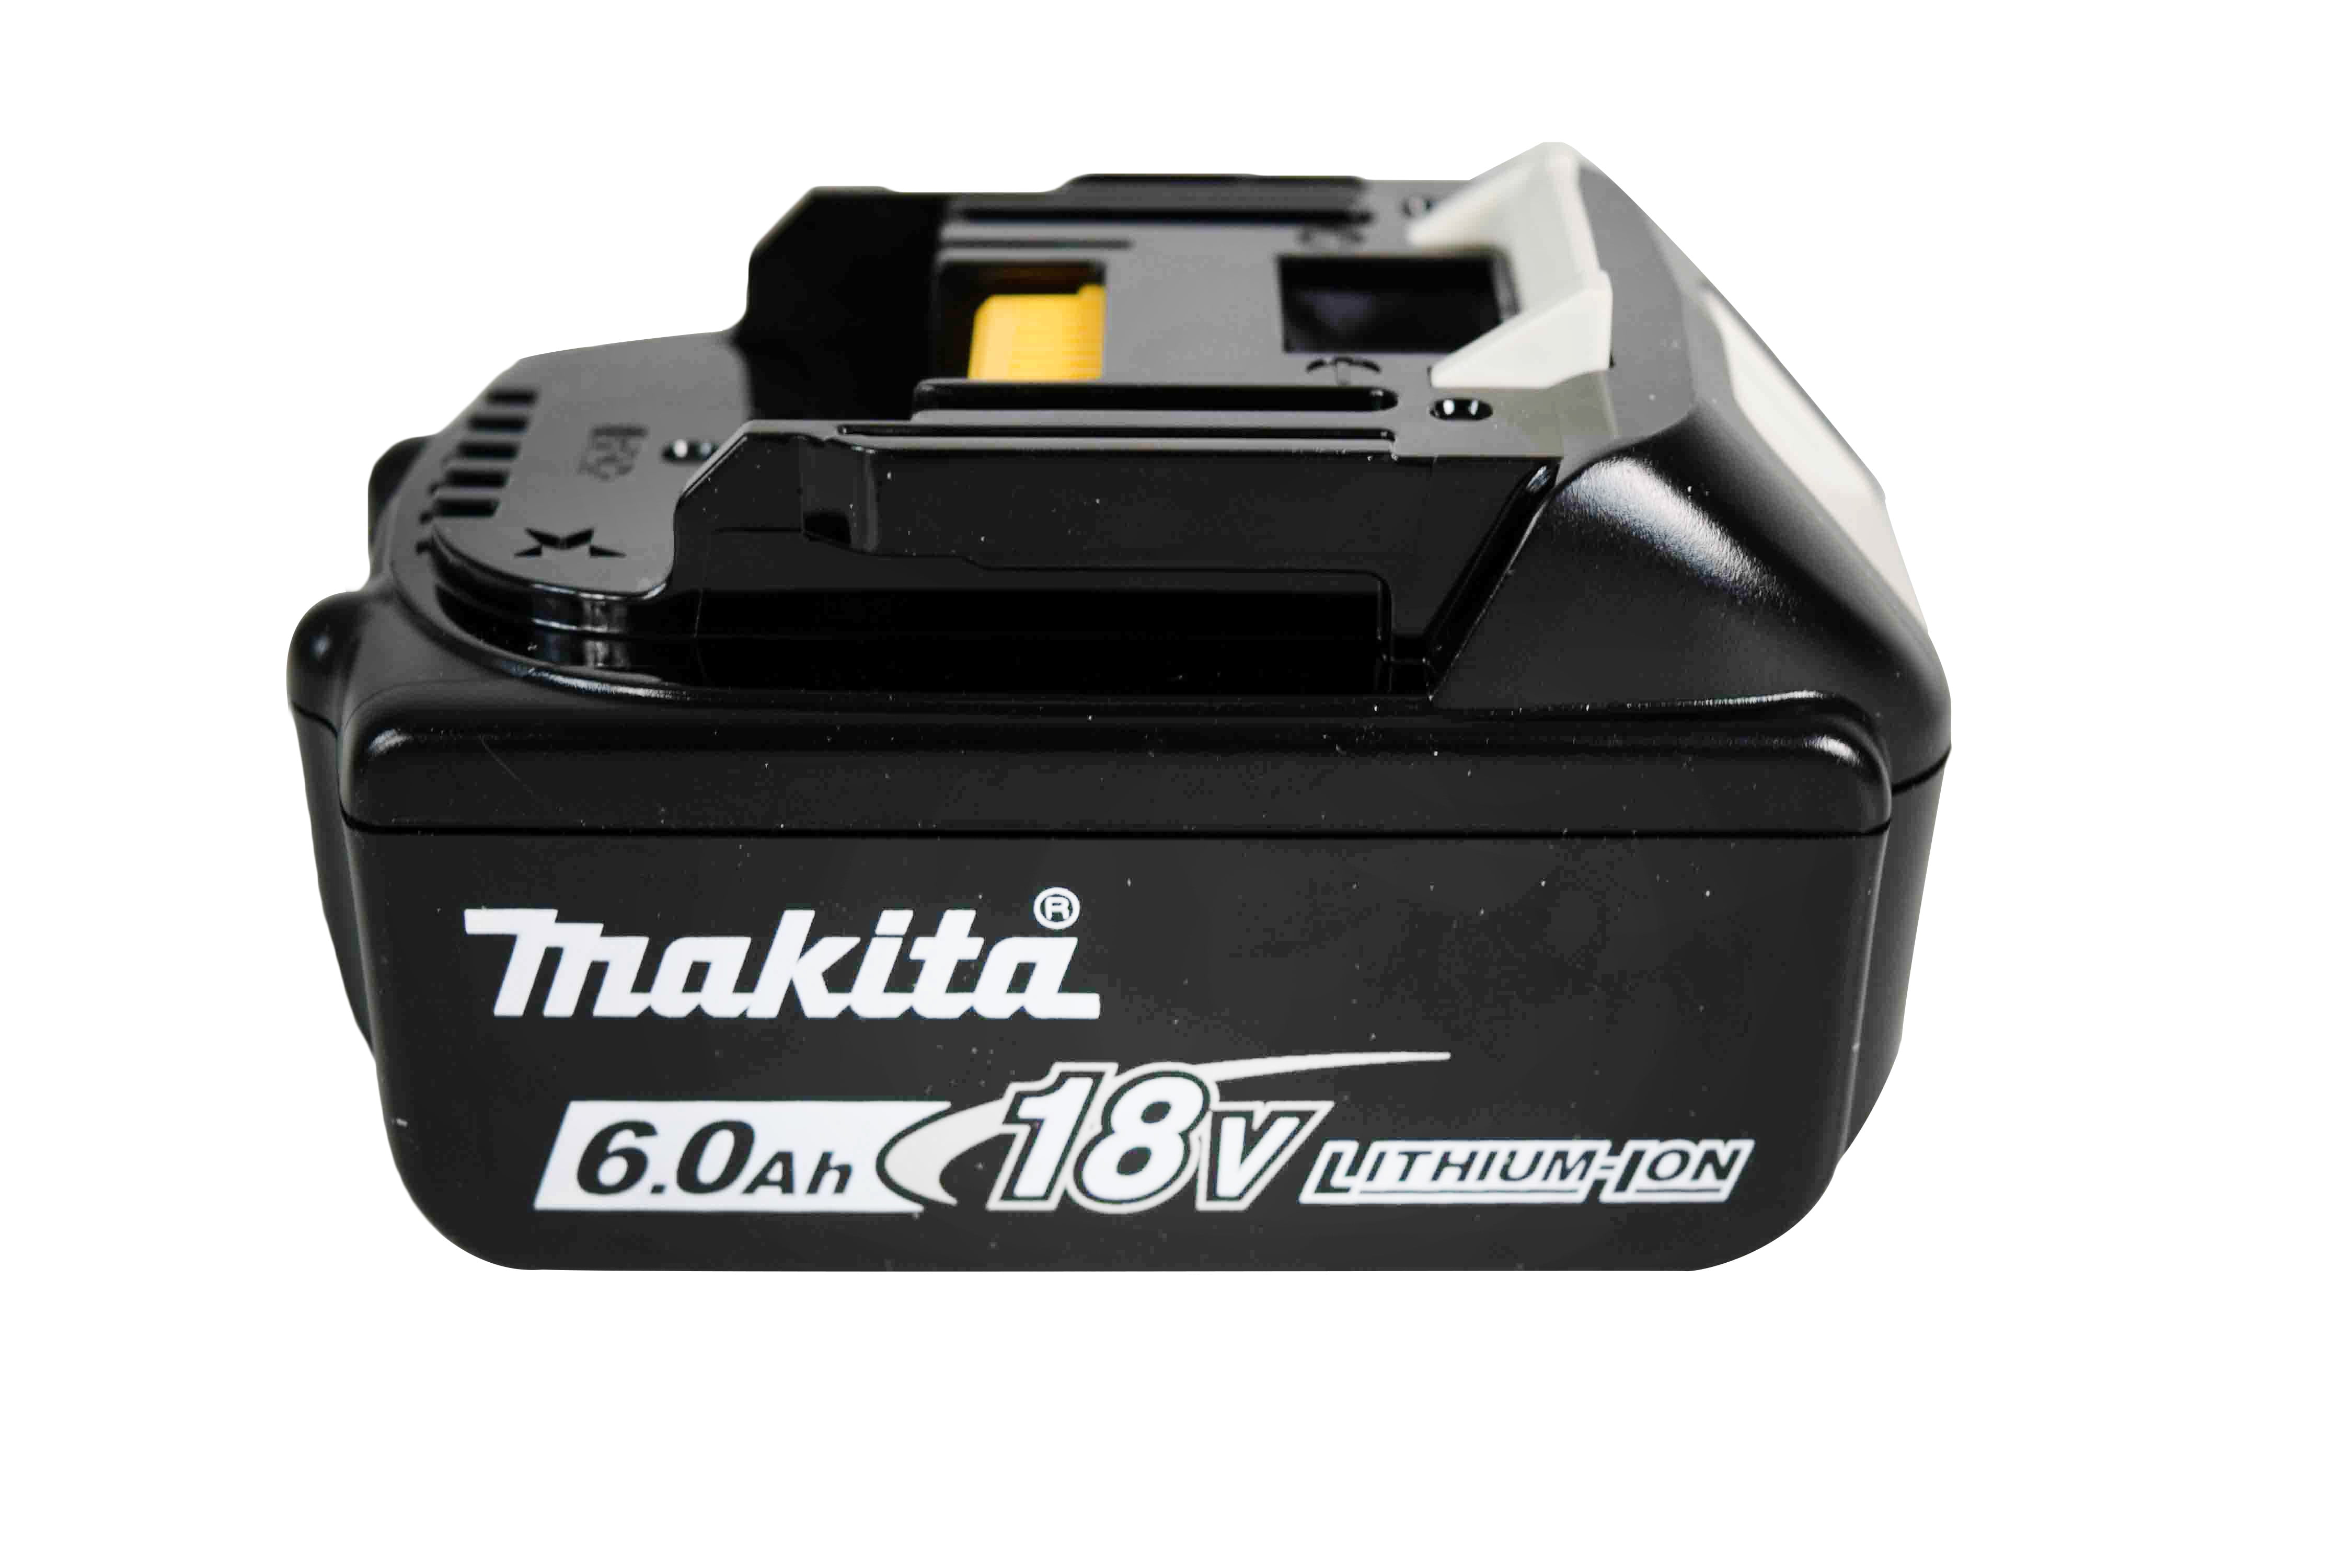 Makita BLB V LXT Lithium Ion 6.0 Ah Battery   Walmart.com